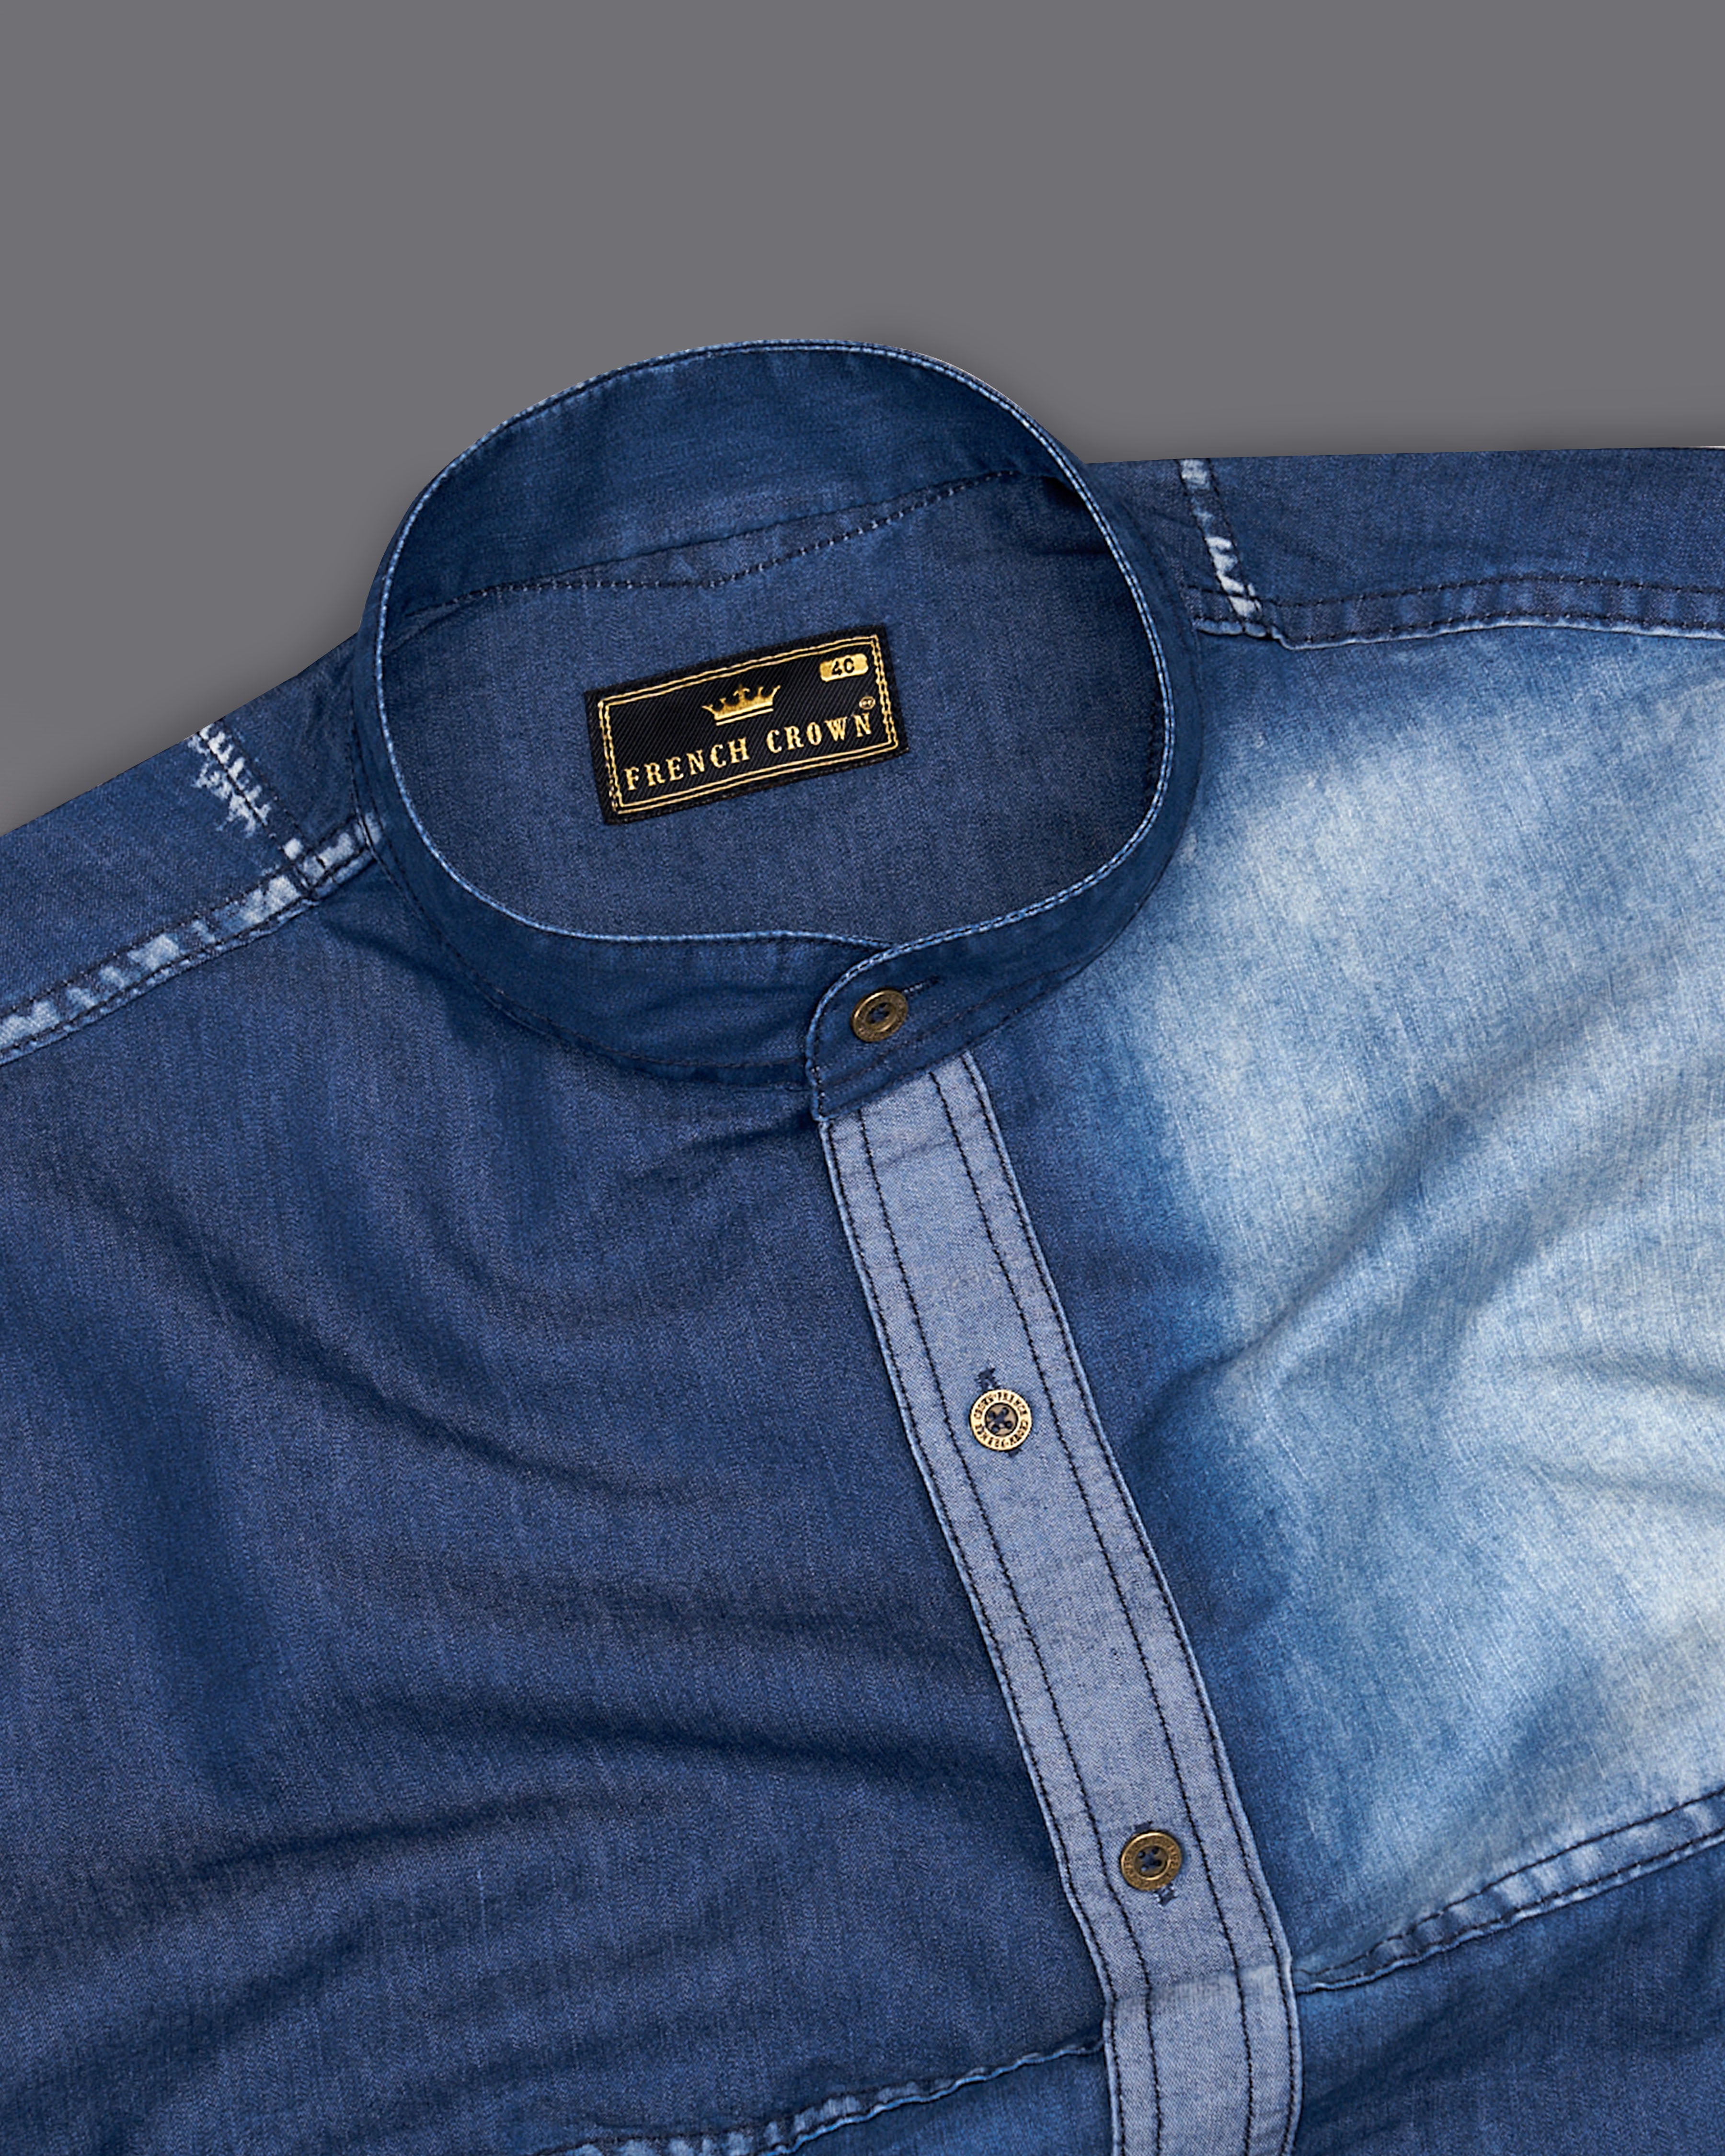 Men's Long Sleeve Jeans Shirt | Long Sleeve Jean Shirt Men | High Quality  Jeans Shirt - Shirts - Aliexpress